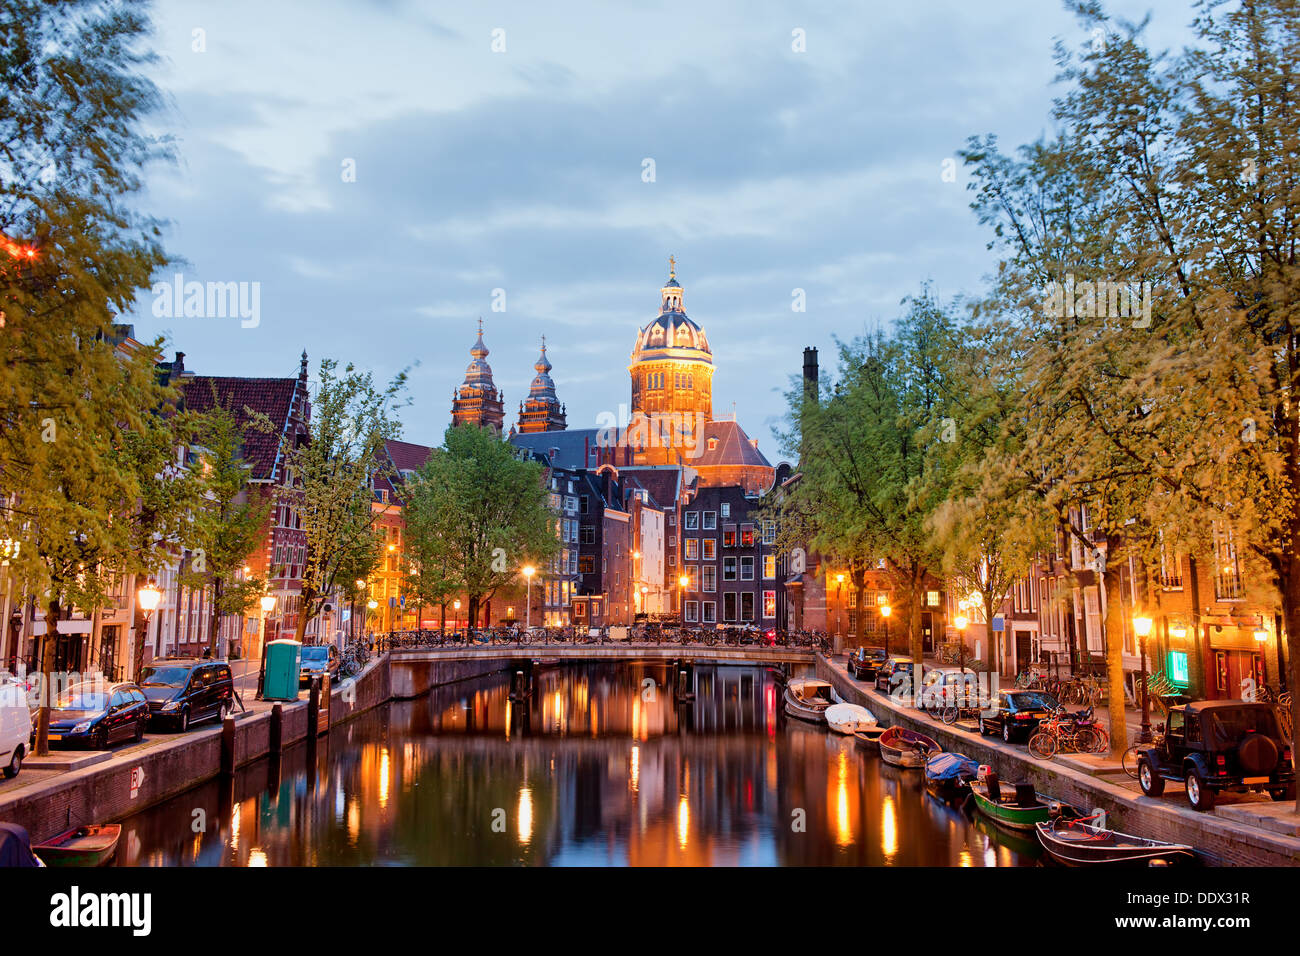 Il quartiere a luci rosse di Amsterdam al crepuscolo in Paesi Bassi, North Holland provincia. Foto Stock